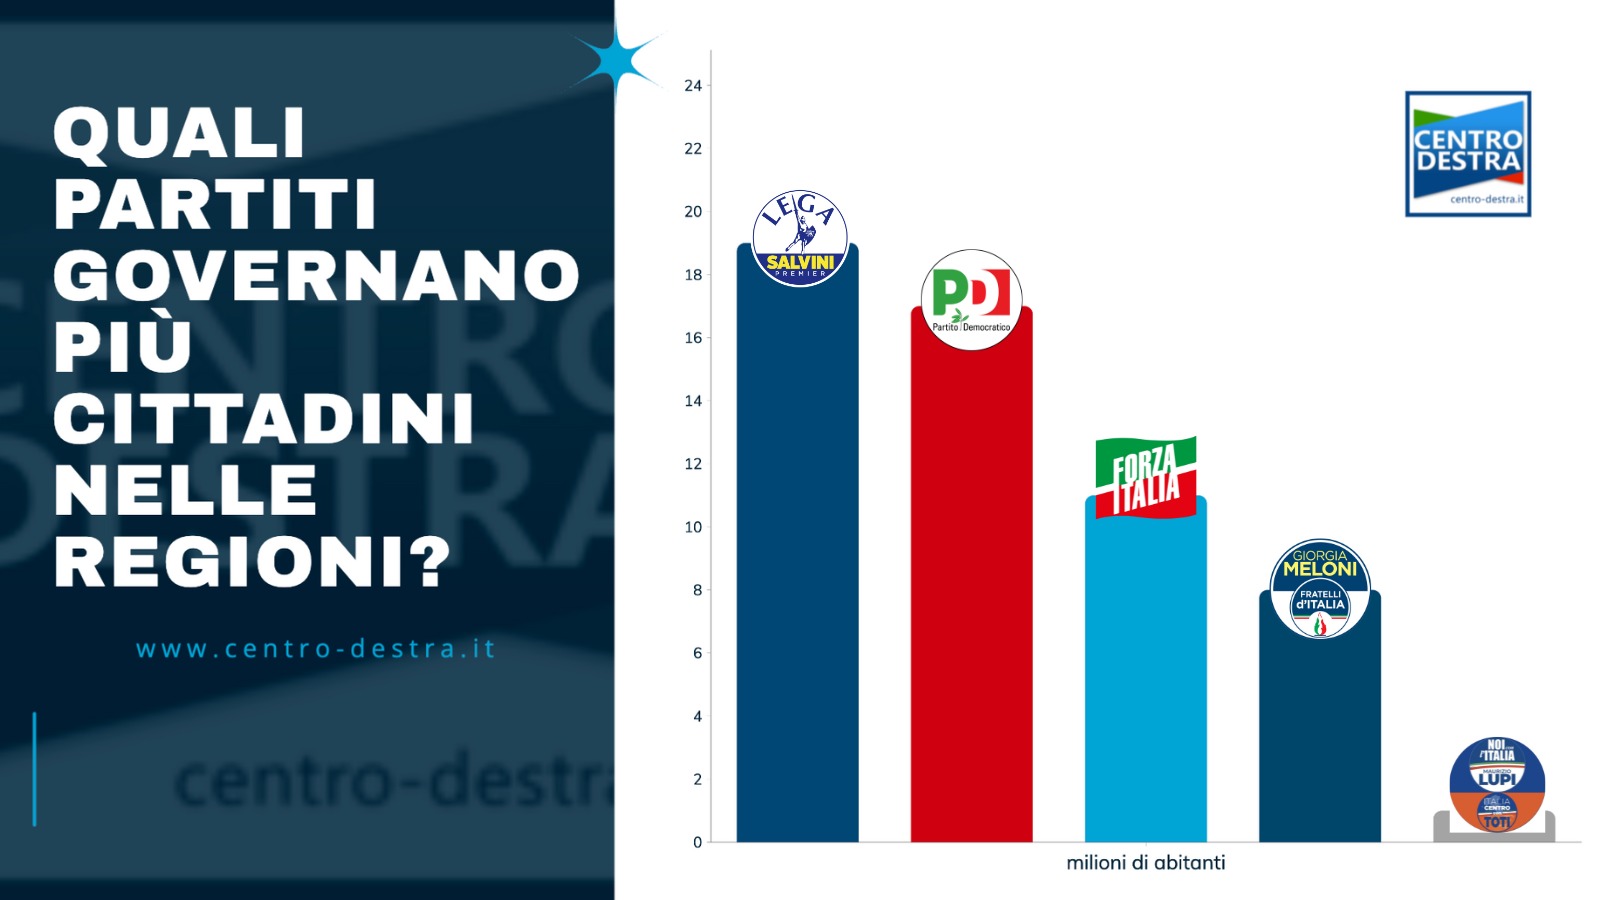 Fratelli d'italia, primo partito in Italia è il meno rappresentato nelle regioni.